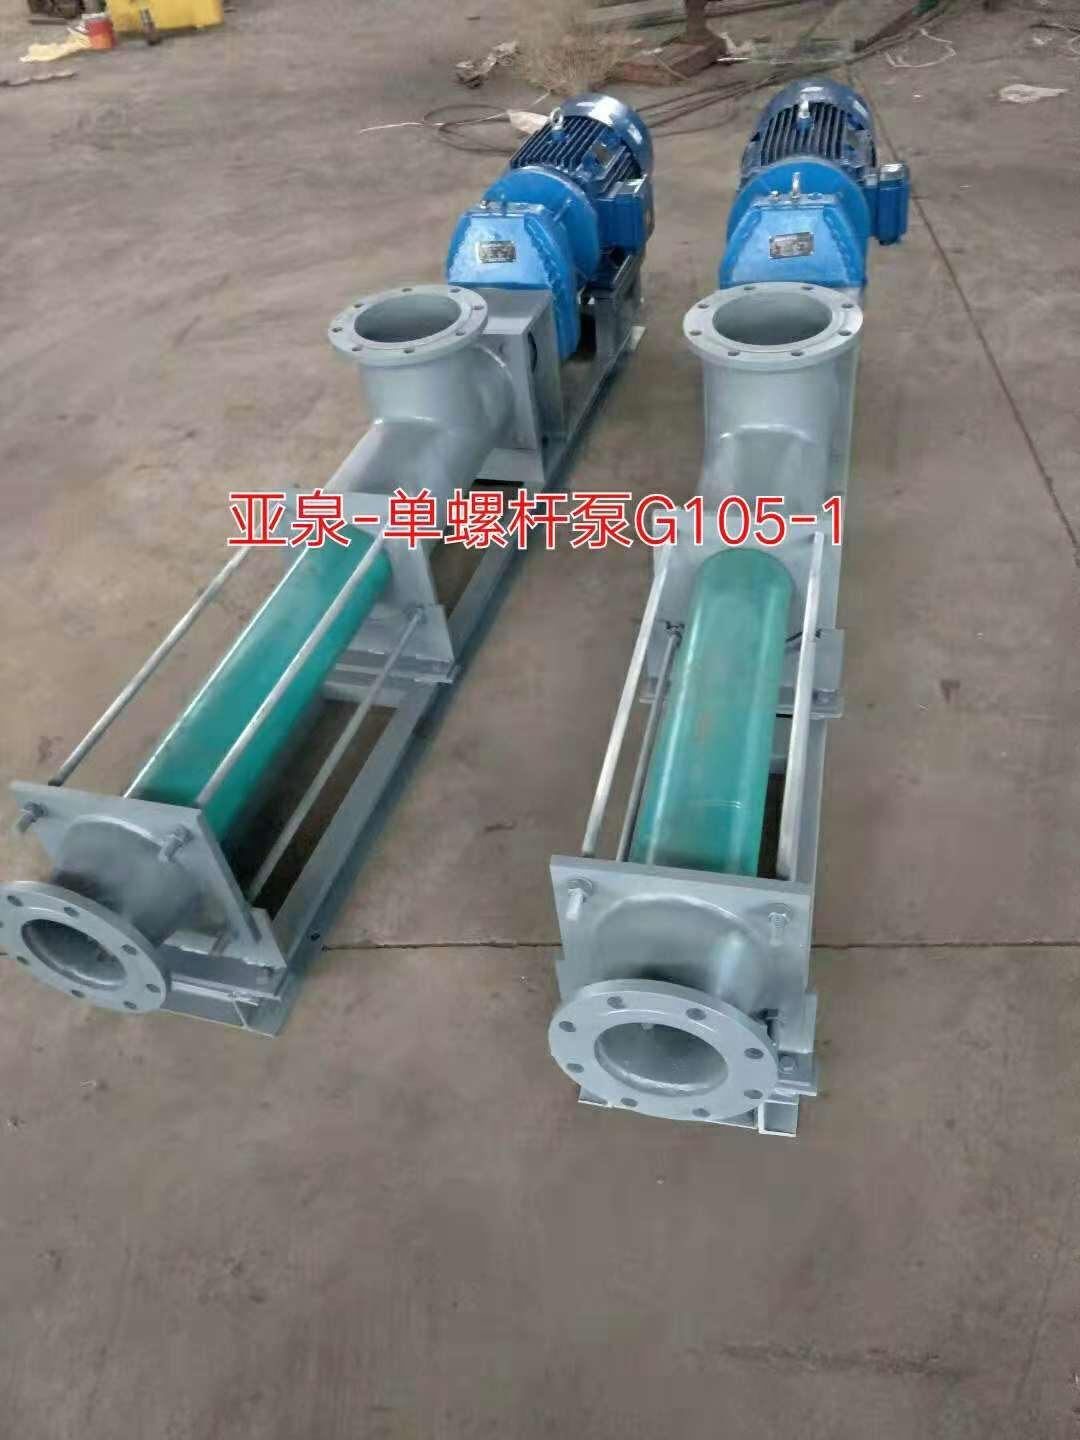 上海亚泉泵业G型单螺杆泵 不锈钢螺杆泵 污泥螺杆泵厂家 价格 图片 选型